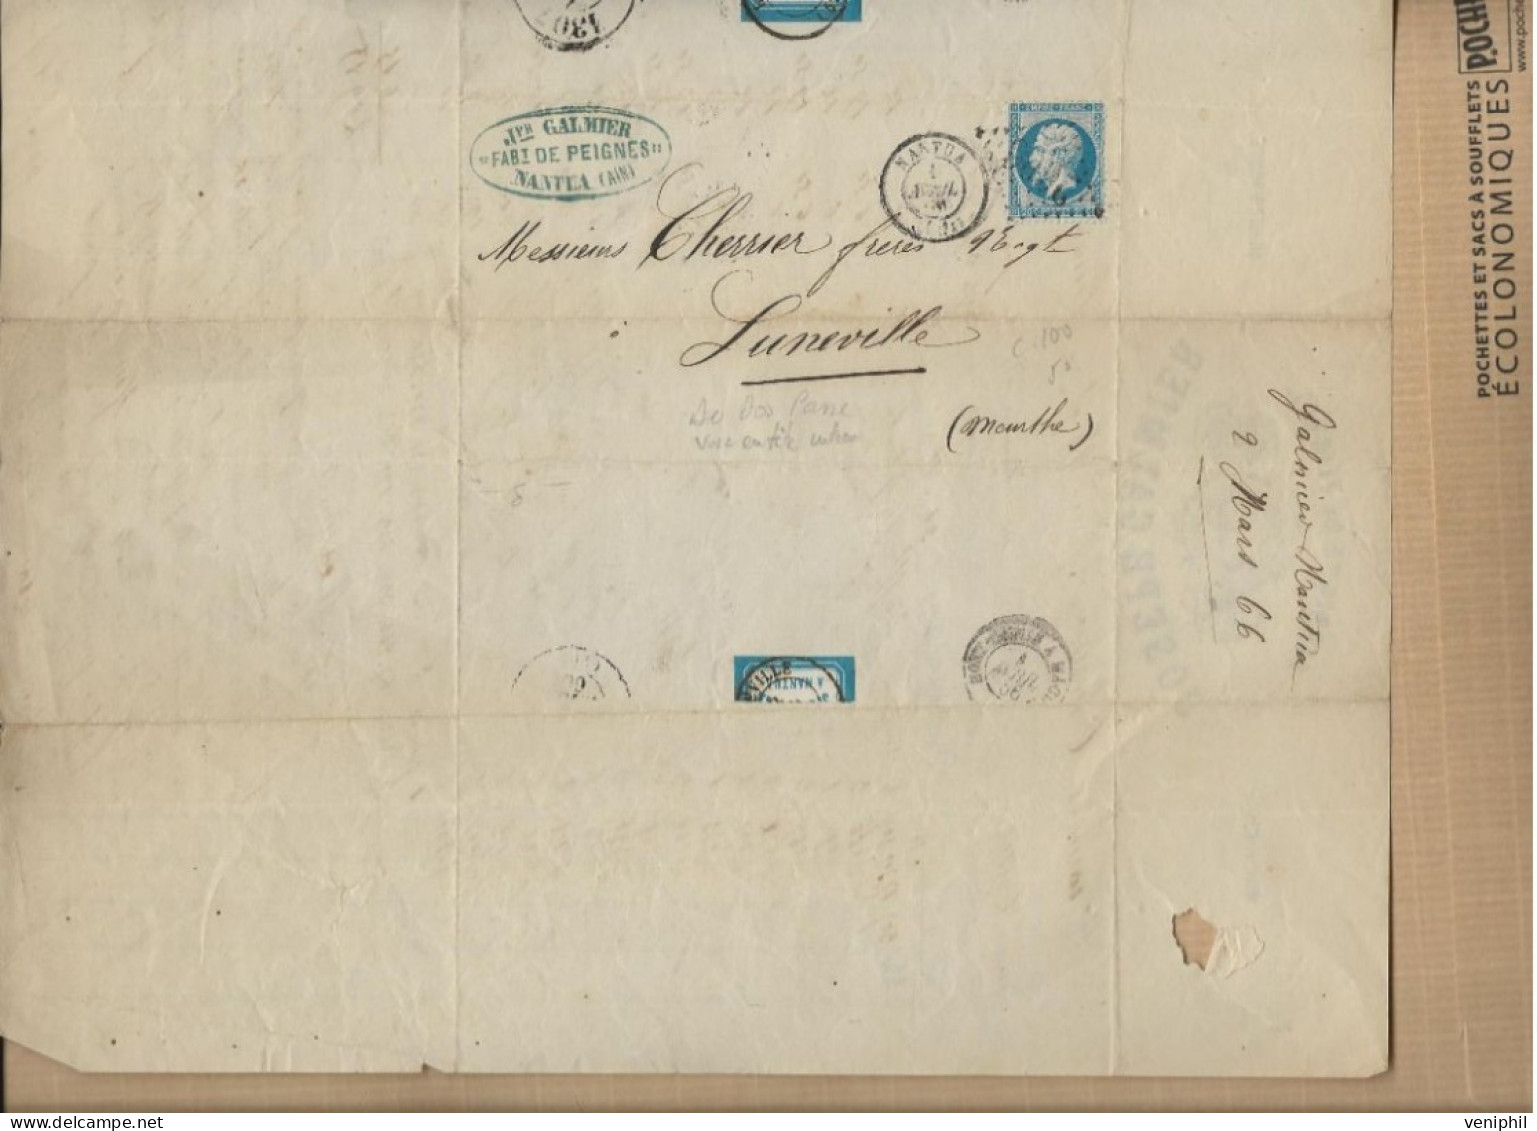 FABRIQUE DE PEIGNES - JOSEPH GALMIER- NANTUA -AIN - ANNEE 1866 - AFFRANCHIE N° 22 +CAD NANTUA - Ambachten